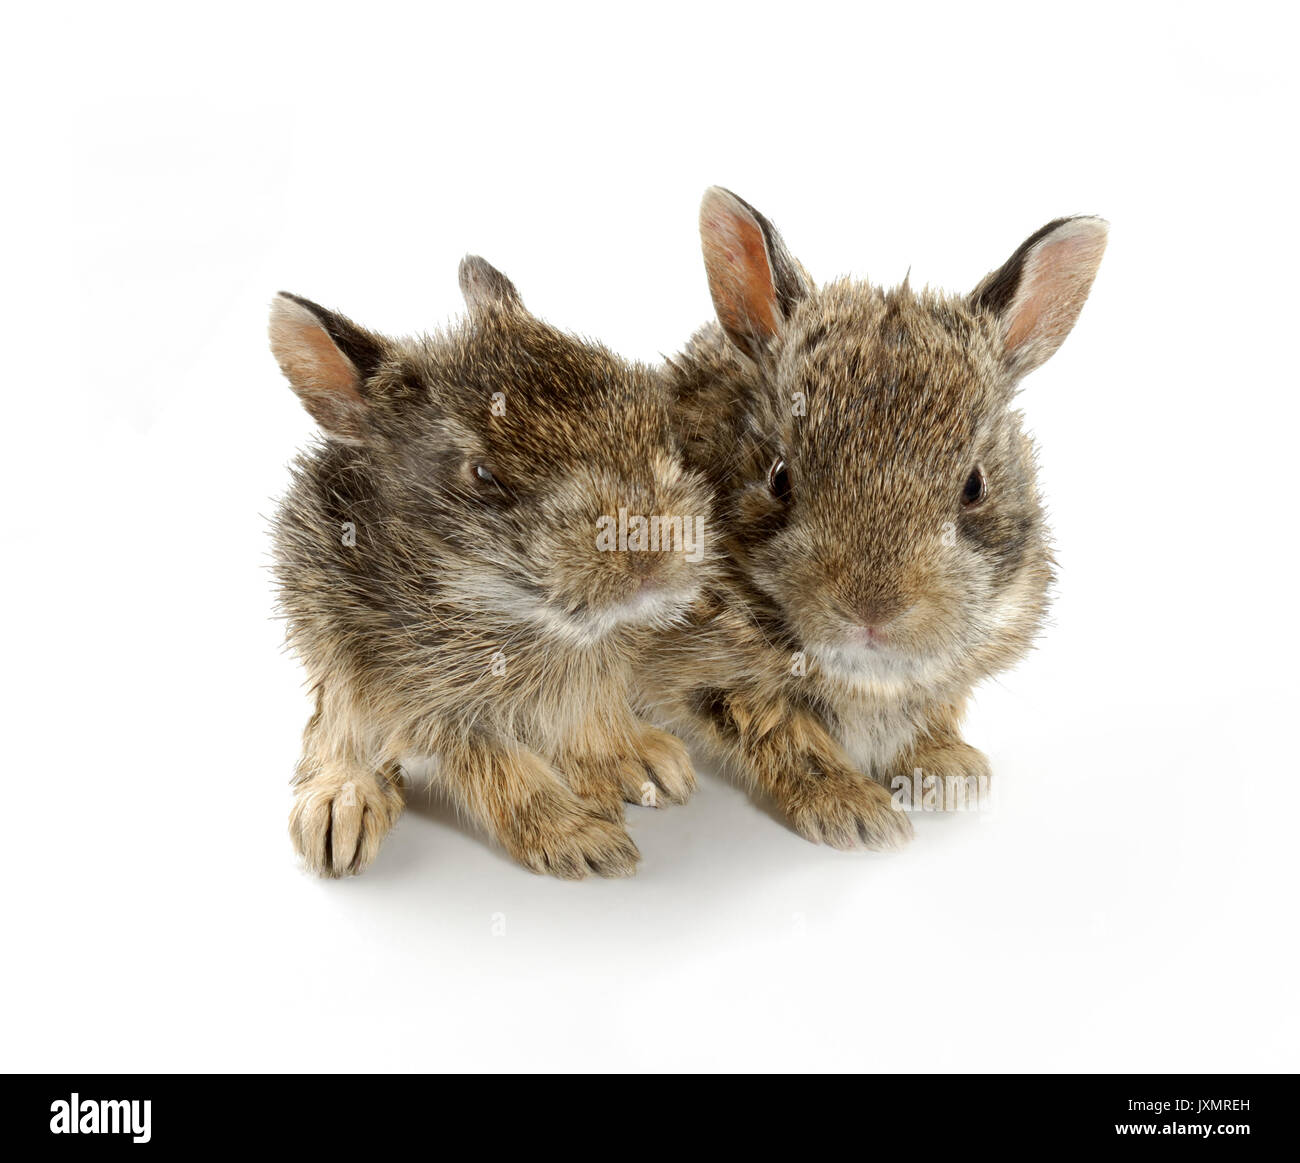 Zwei wilde baby Hase Kaninchen gefunden auf kanadischen Prärien. Diese sind wild Geschwister, die von der Mutter getrennt wurden. Stockfoto